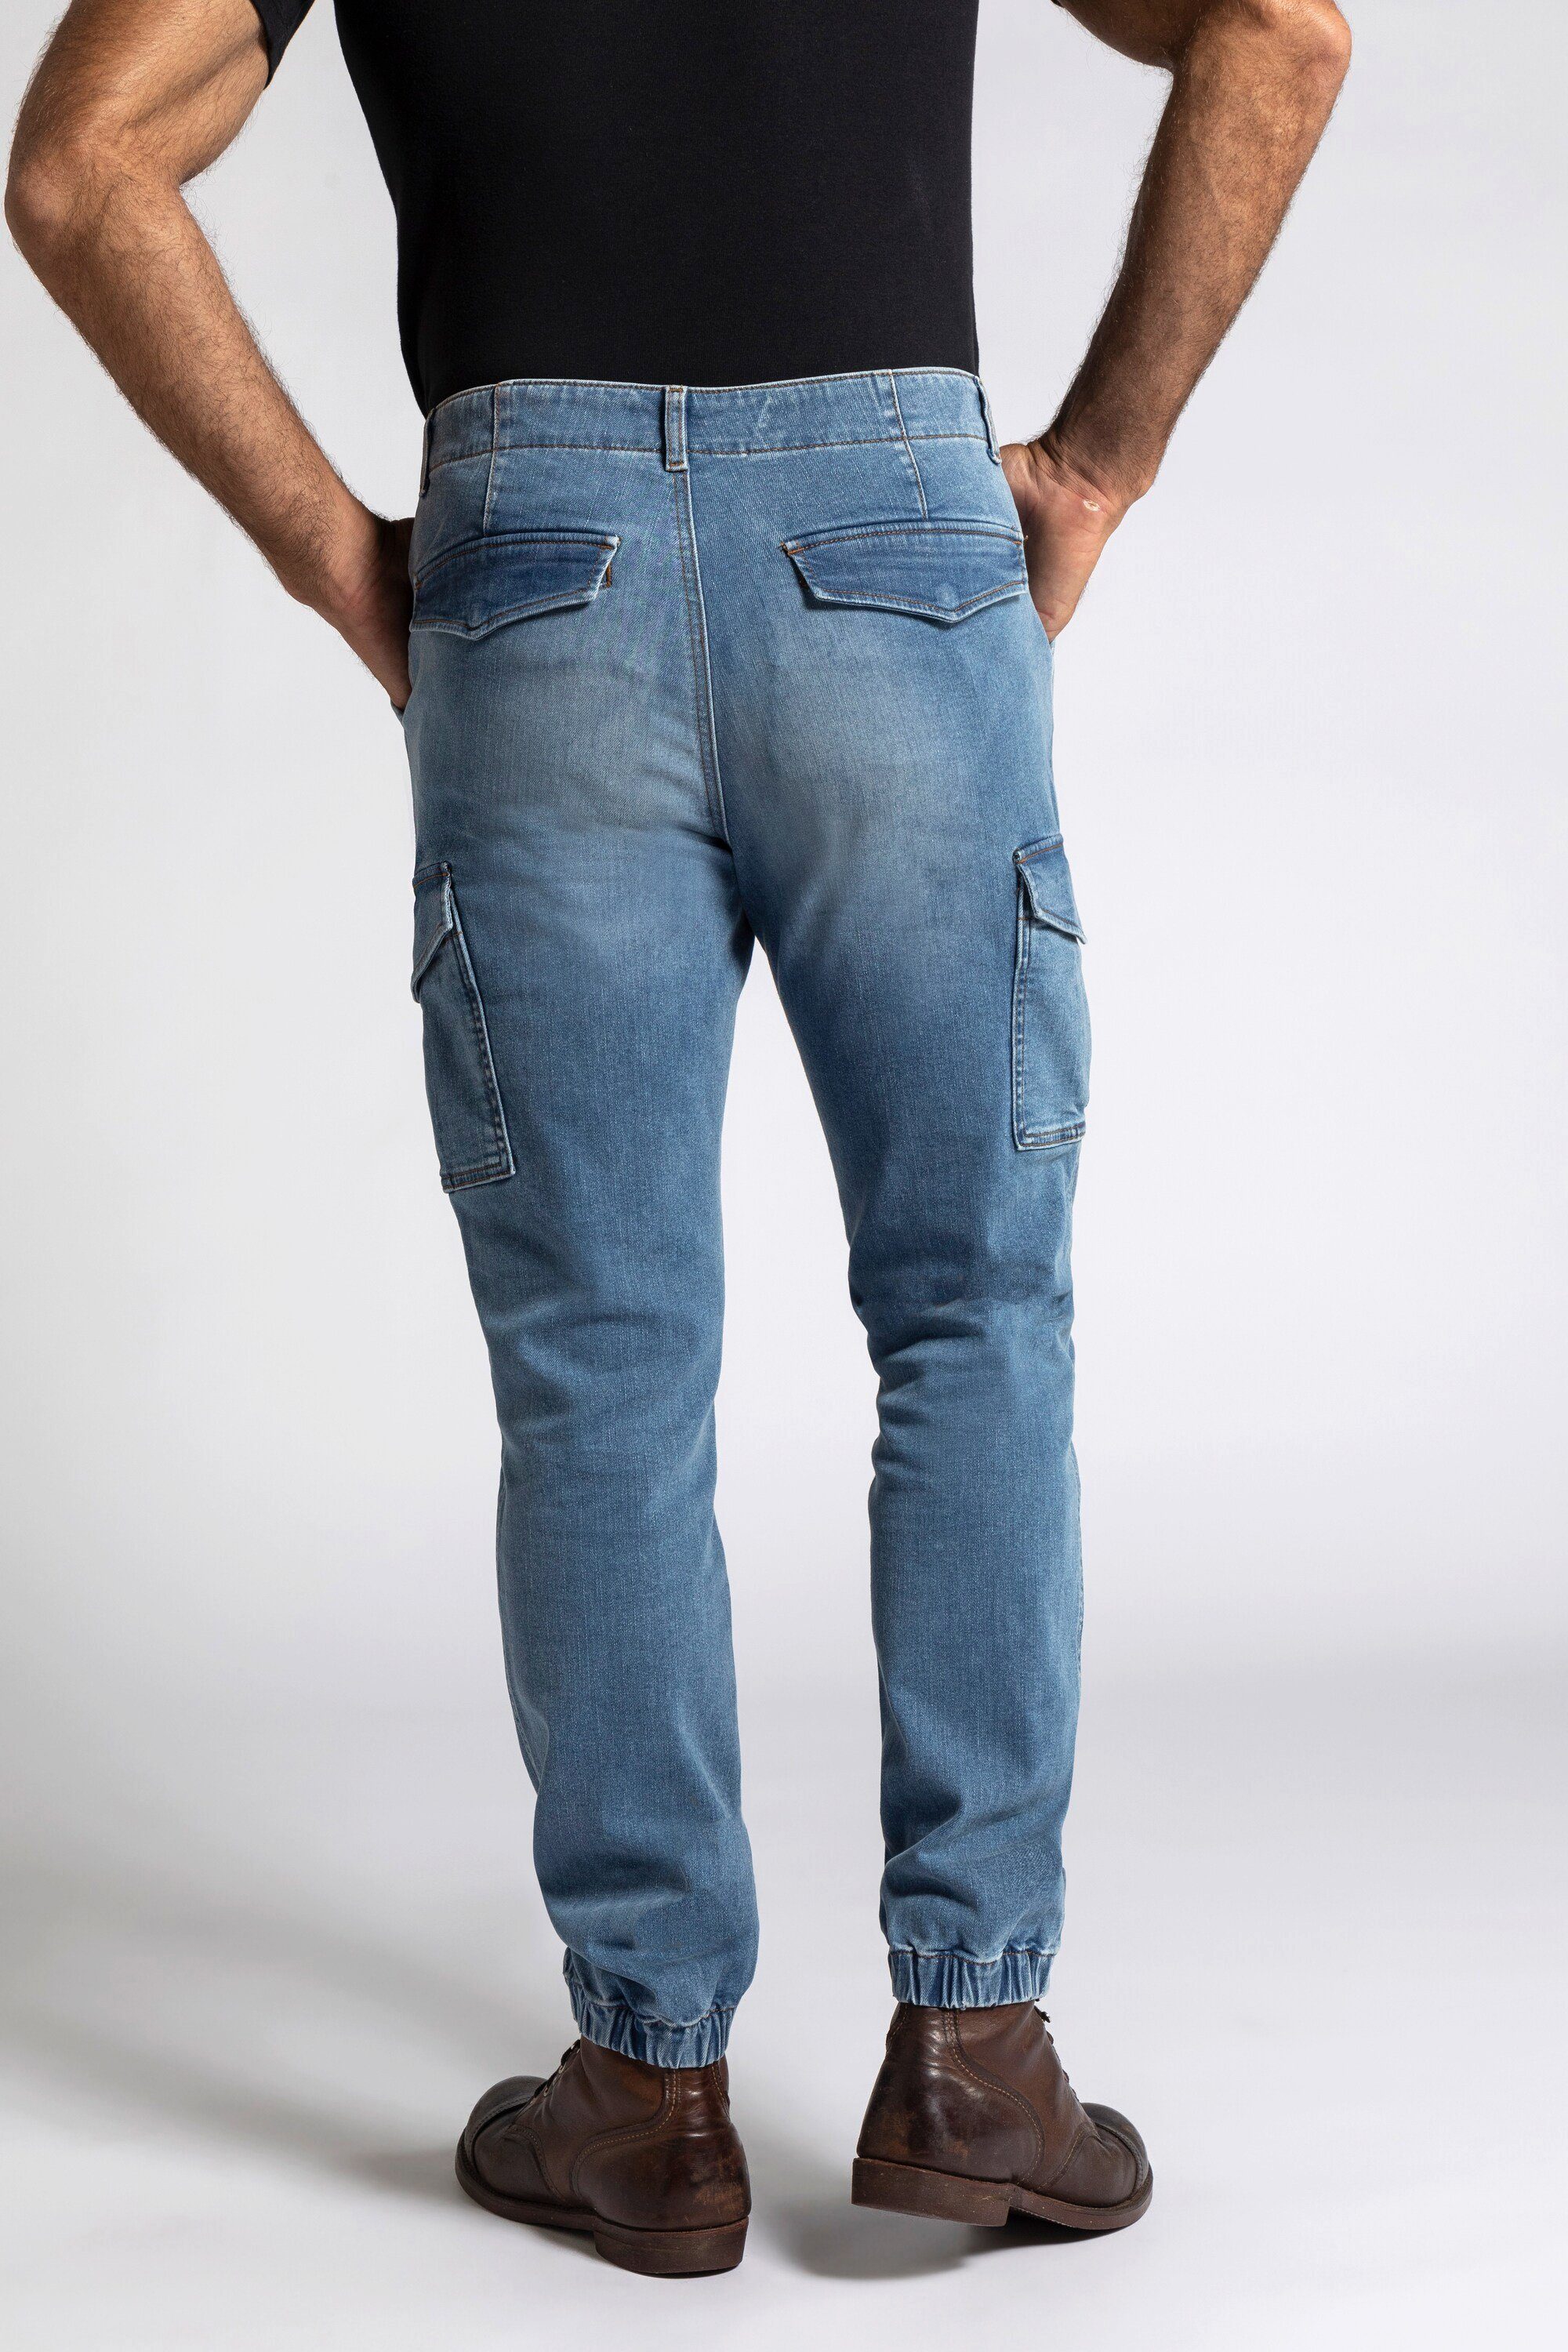 JP1880 5-Pocket-Jeans blue denim Cargo-Jeans FLEXNAMIC® Denim 5-Pocket